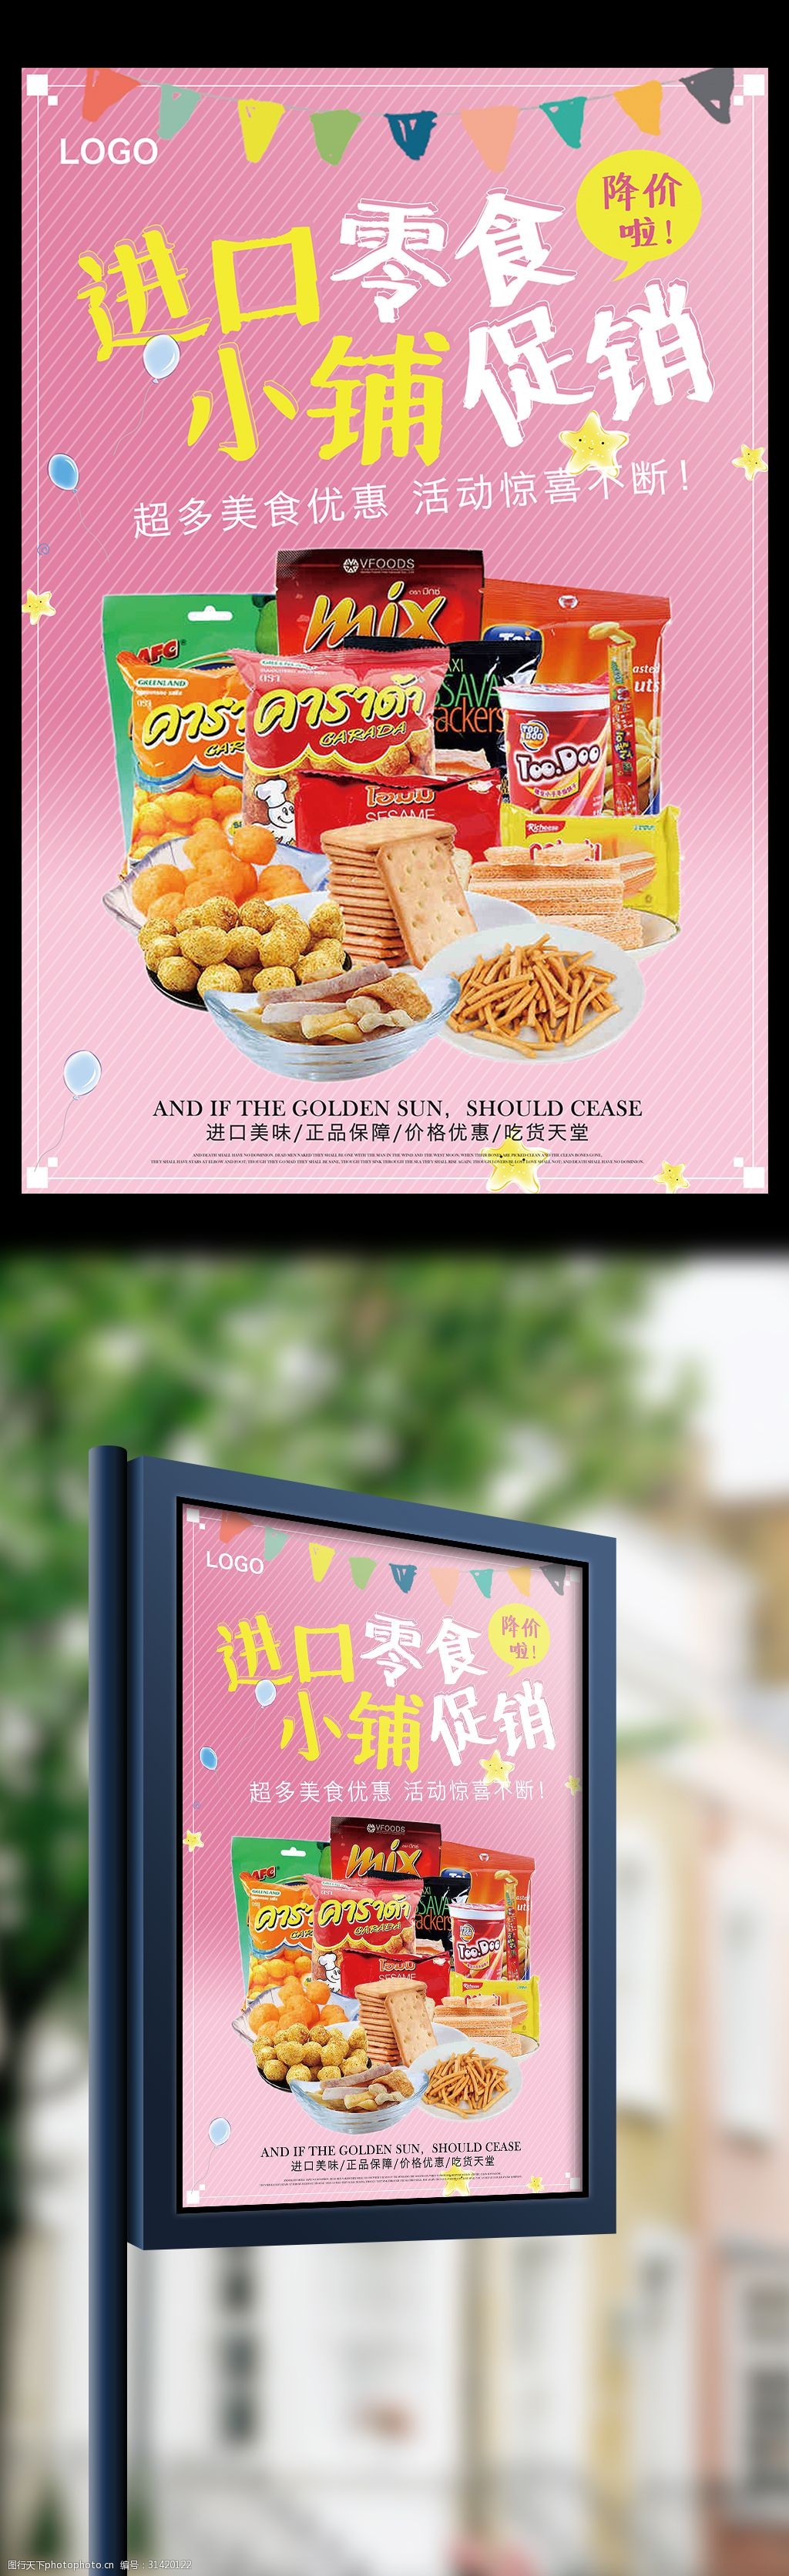 可爱粉色背景进口零食小铺促销活动海报